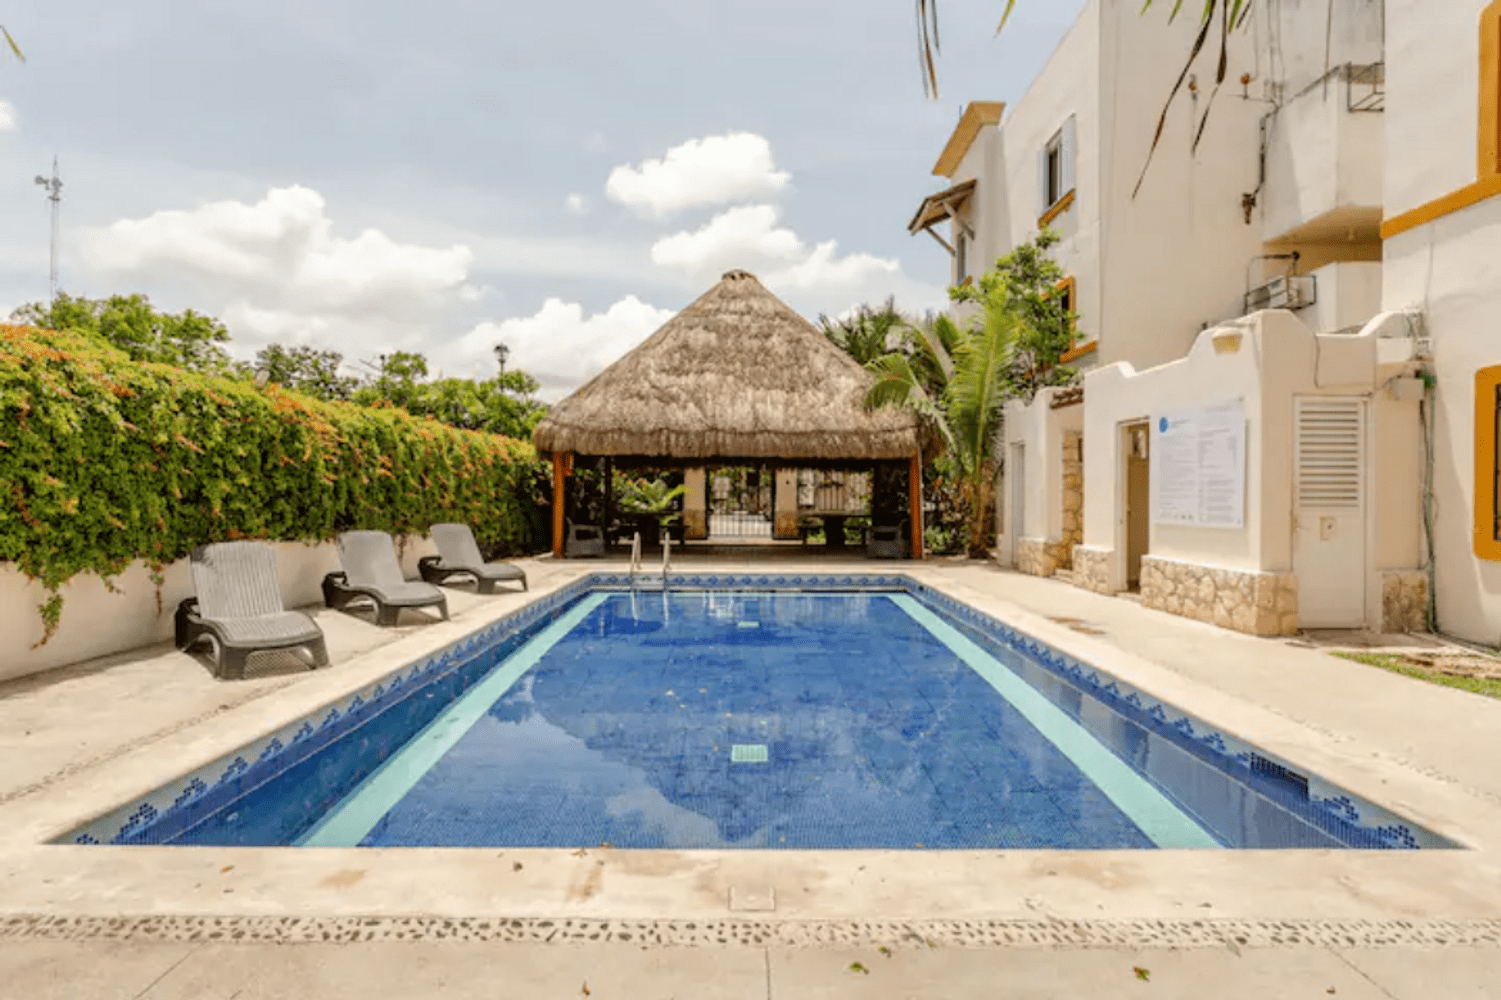 Appartement in Playa Del Carmen mit Kleiner Terras  in Mittelamerika und Karibik